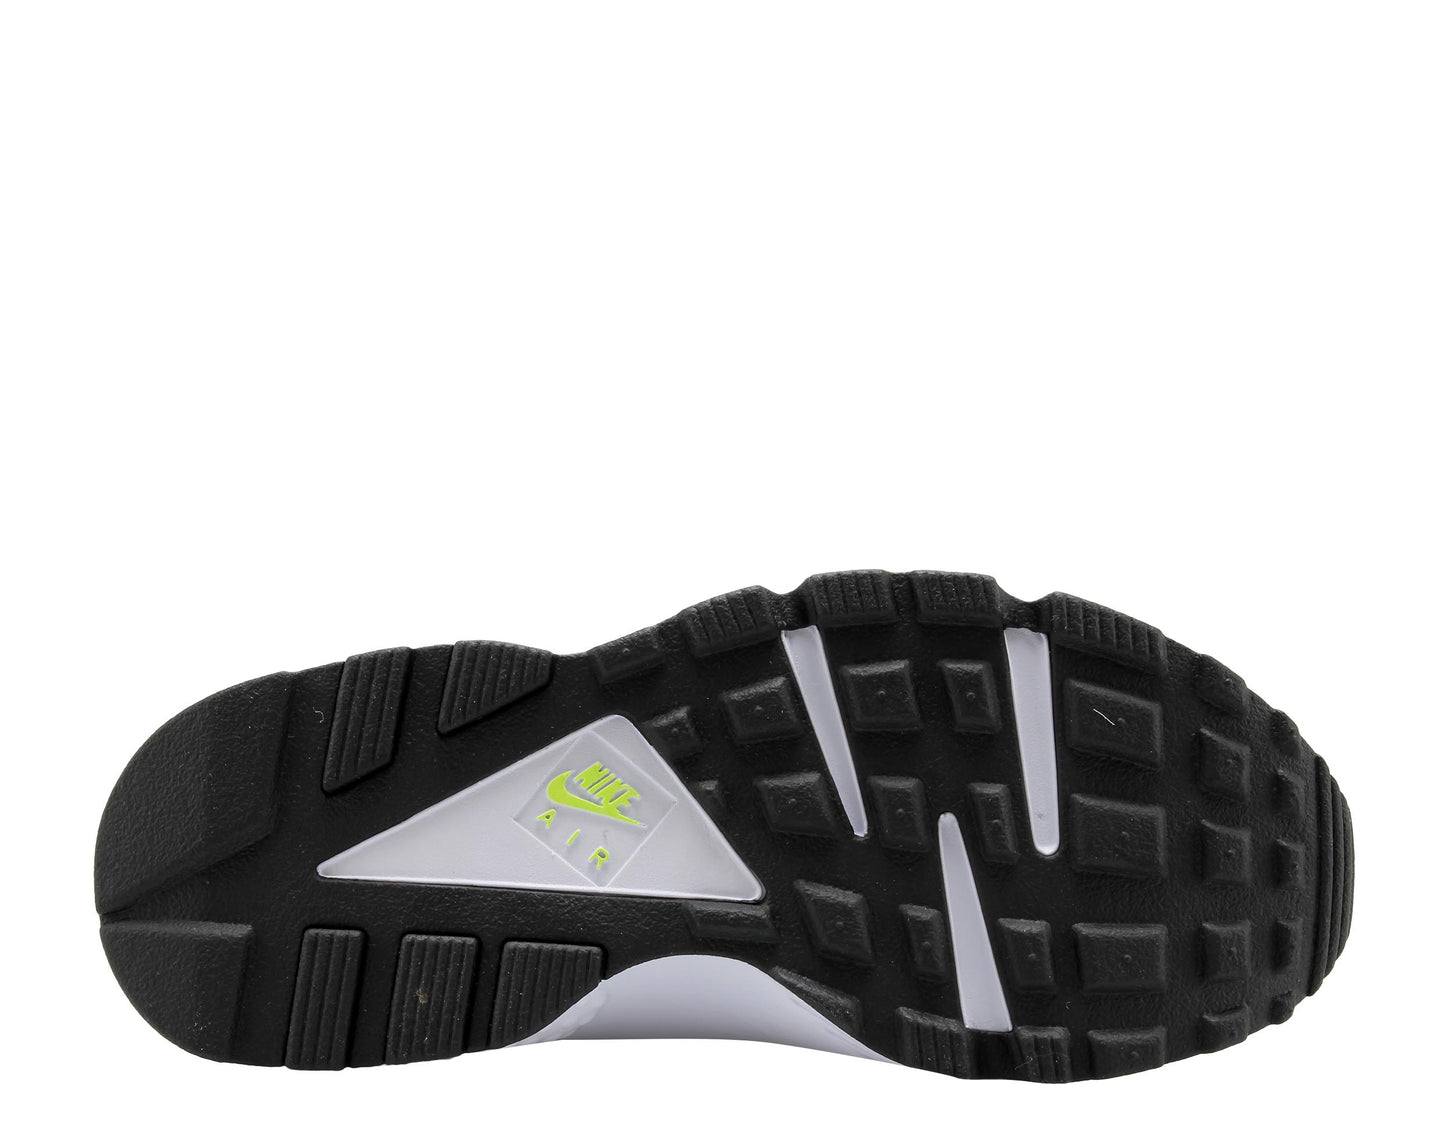 Nike Air Huarache Run '91 QS Magenta White/Neon Men's Running Shoes AH8049-101